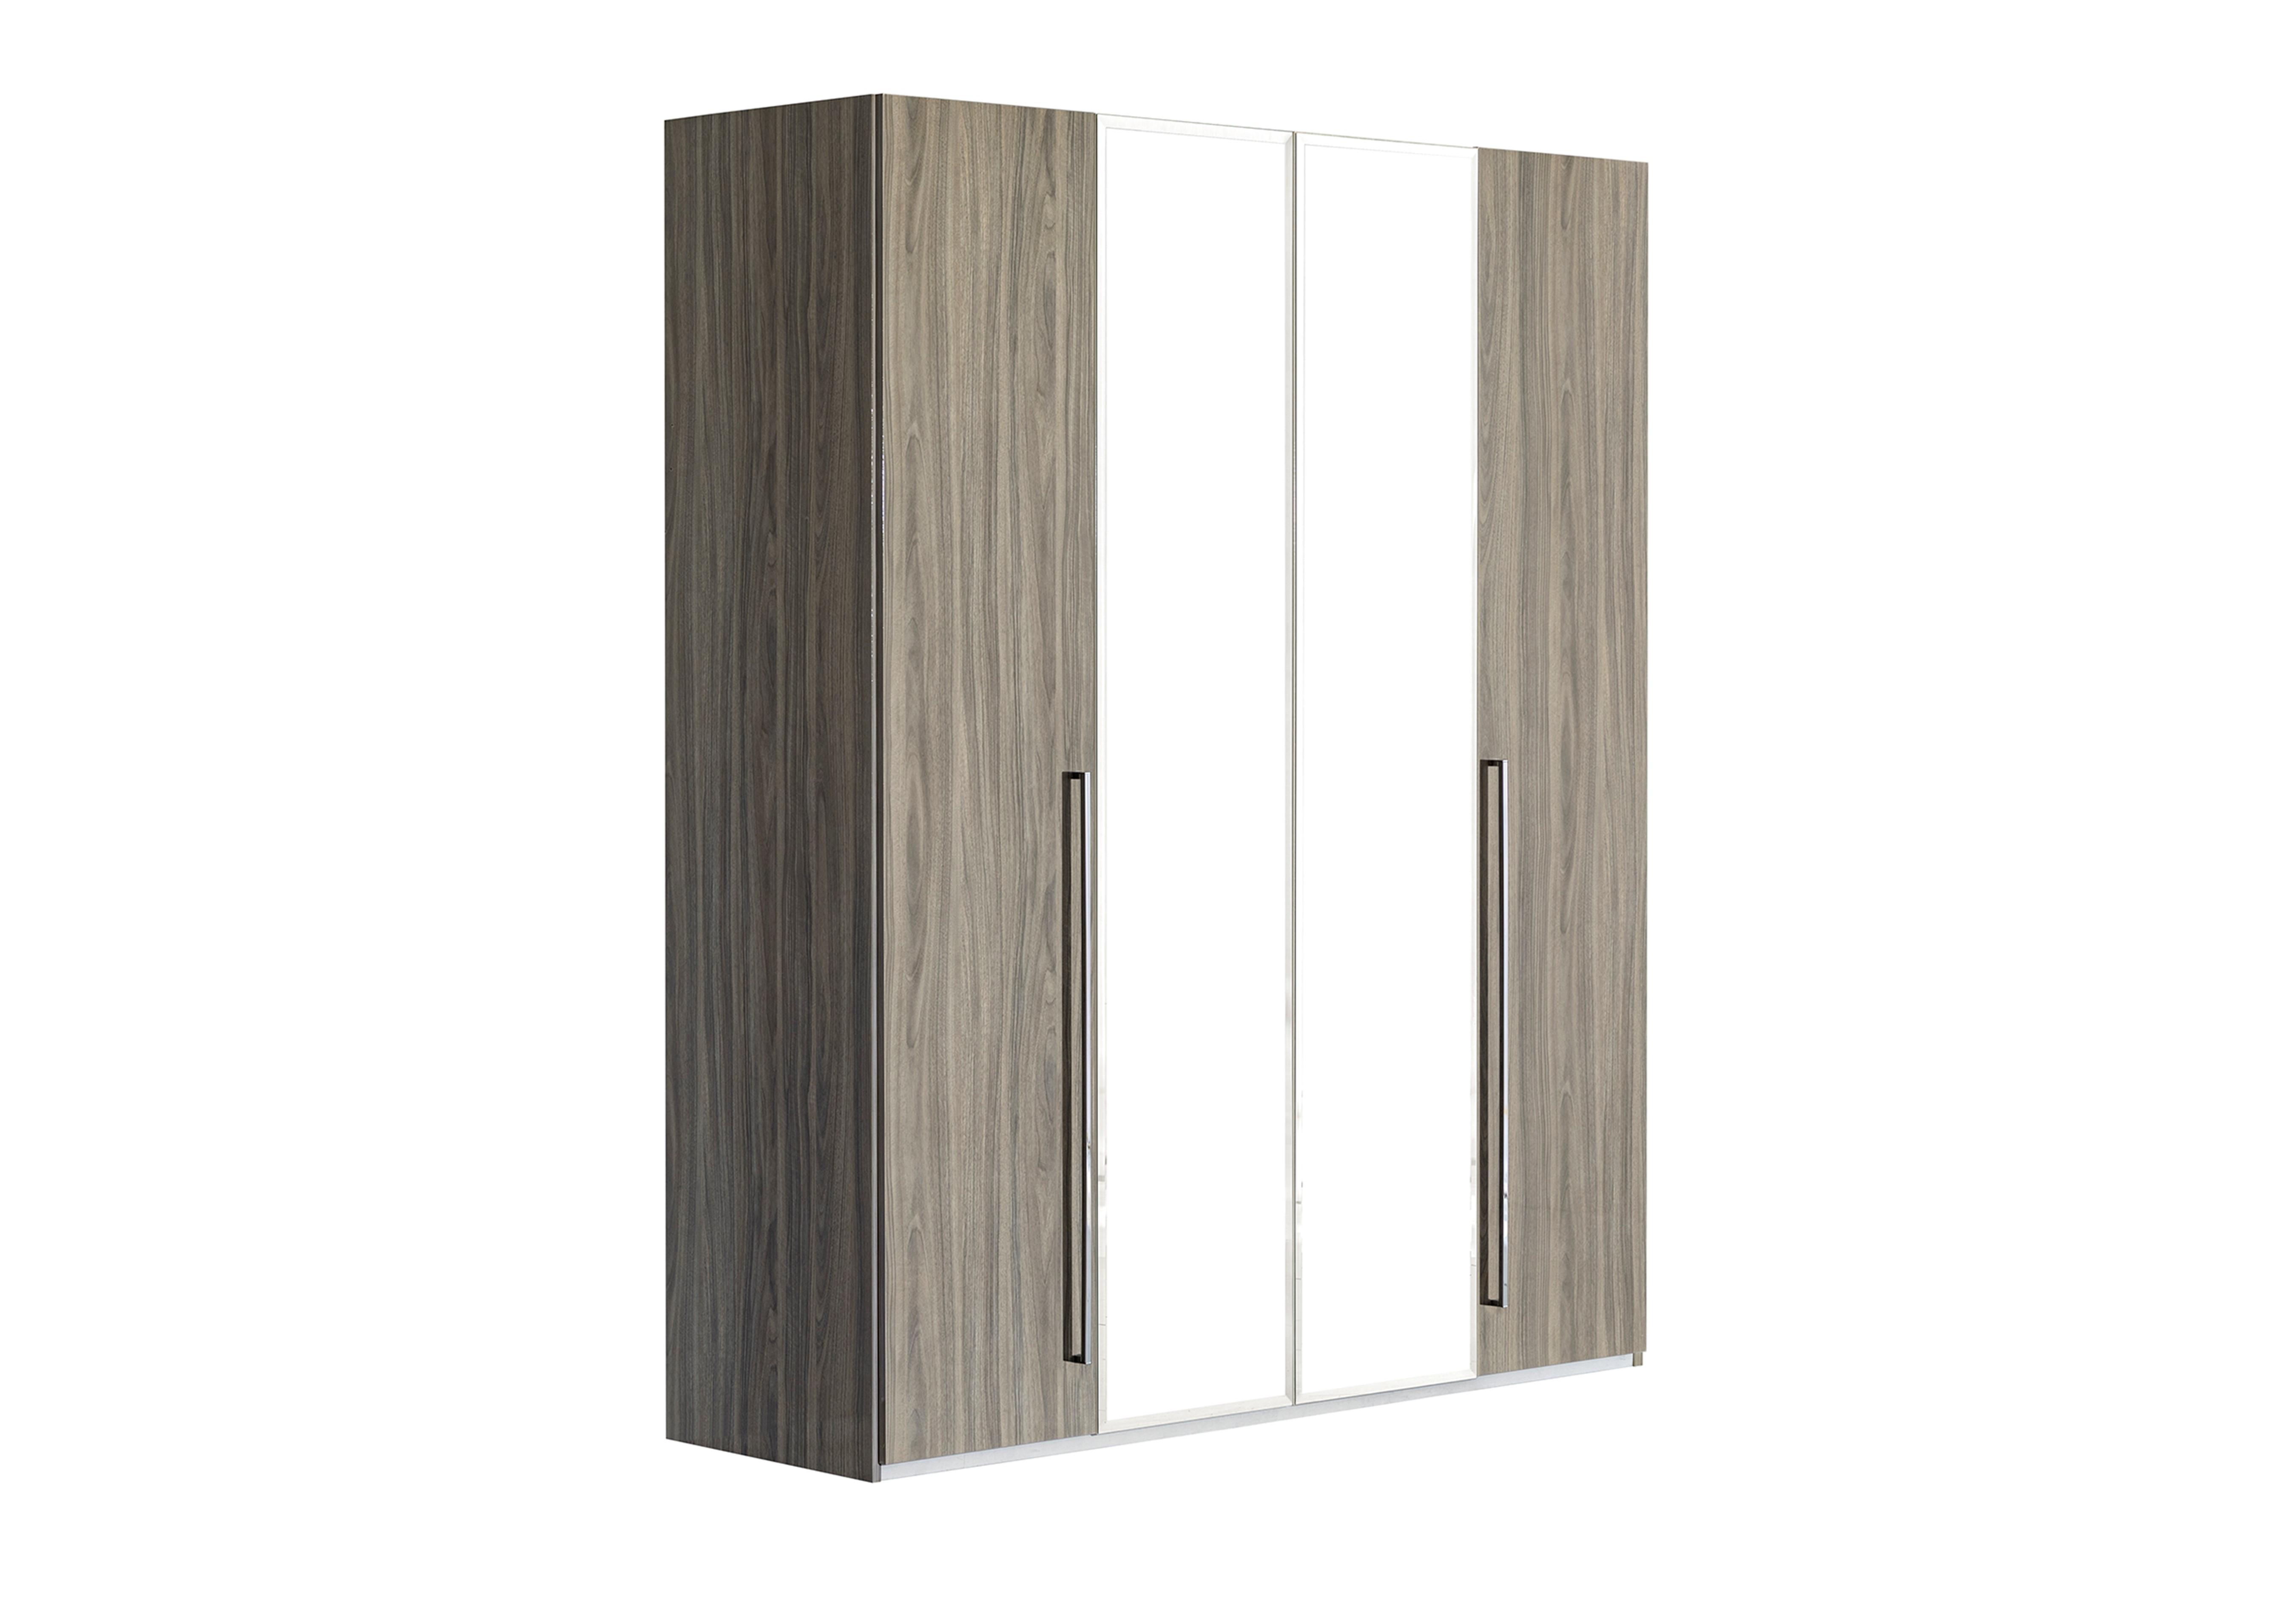 Venezia 4 Door Wardrobe with 2 Mirror Doors in Grey on Furniture Village